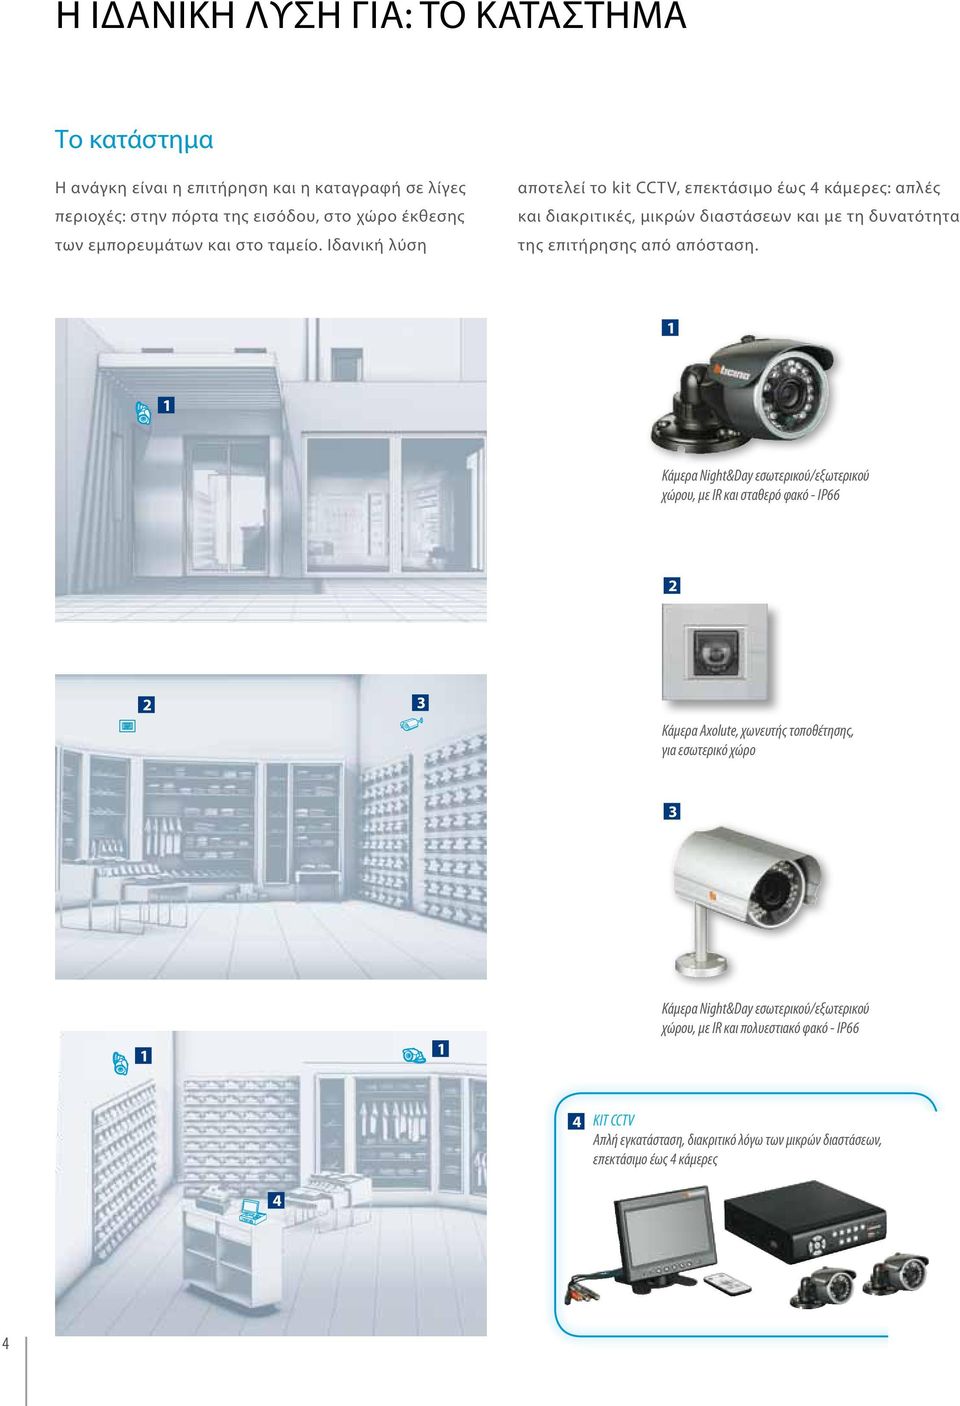 Ιδανική λύση αποτελεί το kit CCTV, επεκτάσιµο έως 4 κάµερες: απλές και διακριτικές, µικρών διαστάσεων και µε τη δυνατότητα της επιτήρησης από απόσταση.